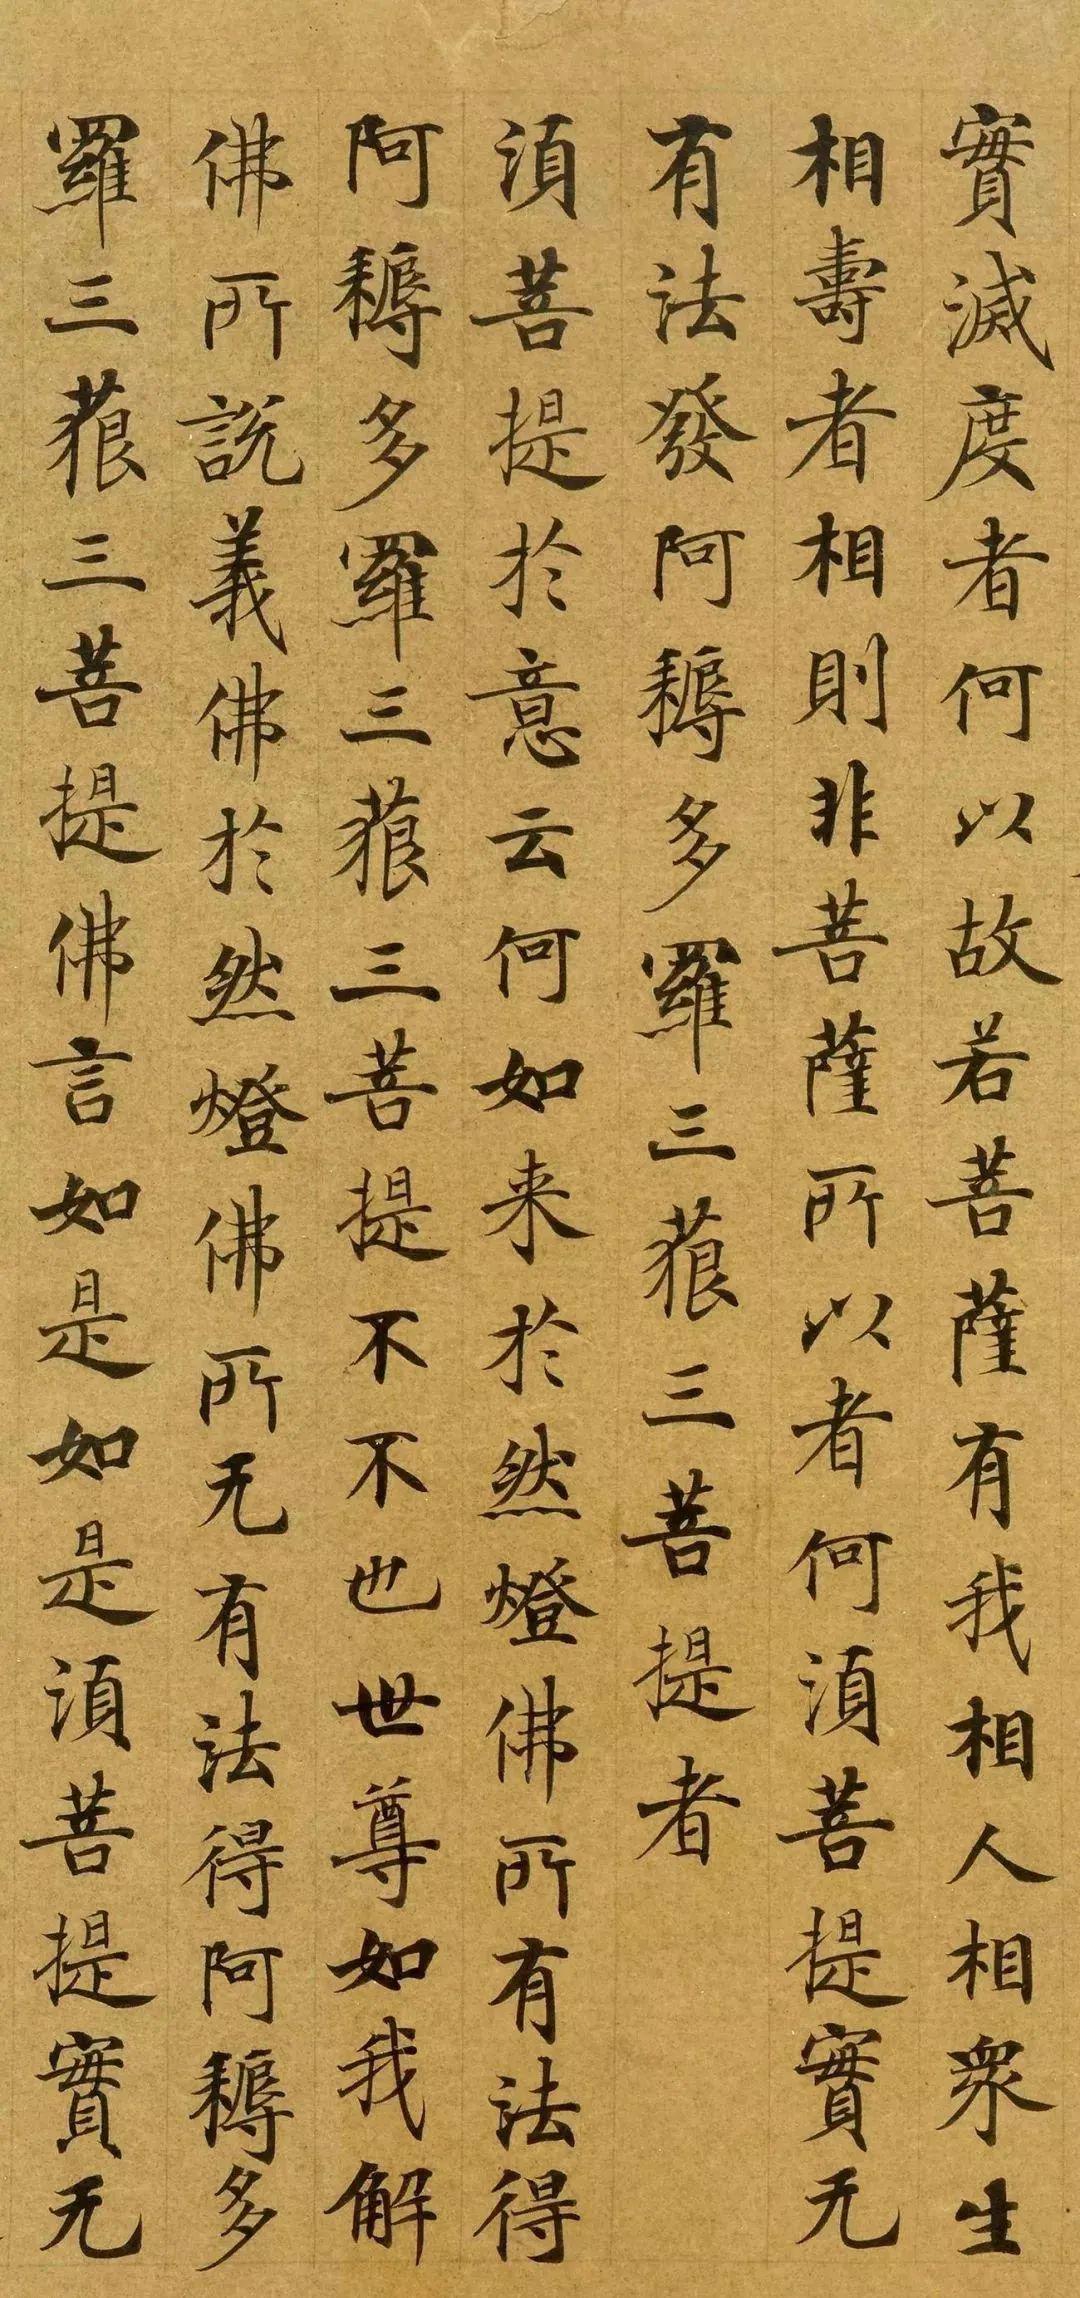 也是唐人写经中是奉武则天命令所书其传世小楷《金刚经》唐代宫廷书手